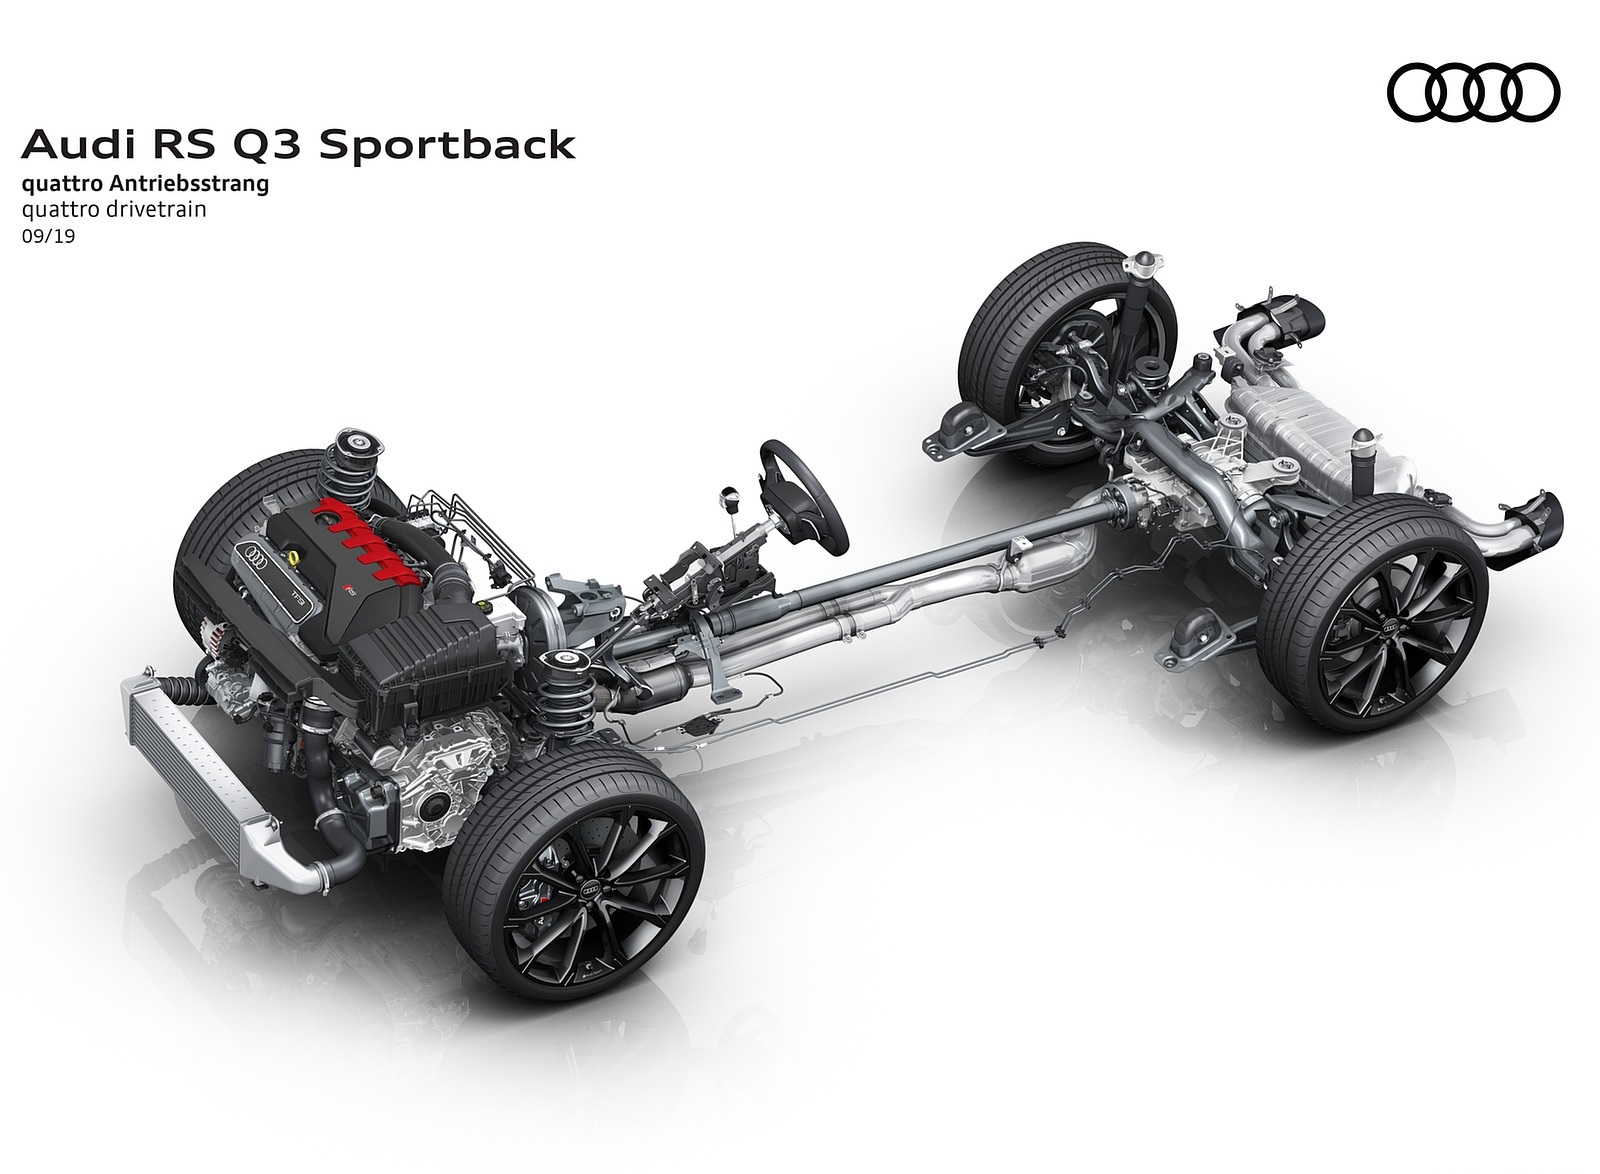 2020 Audi RS Q3 Sportback quattro drivetrain Wallpapers #124 of 127